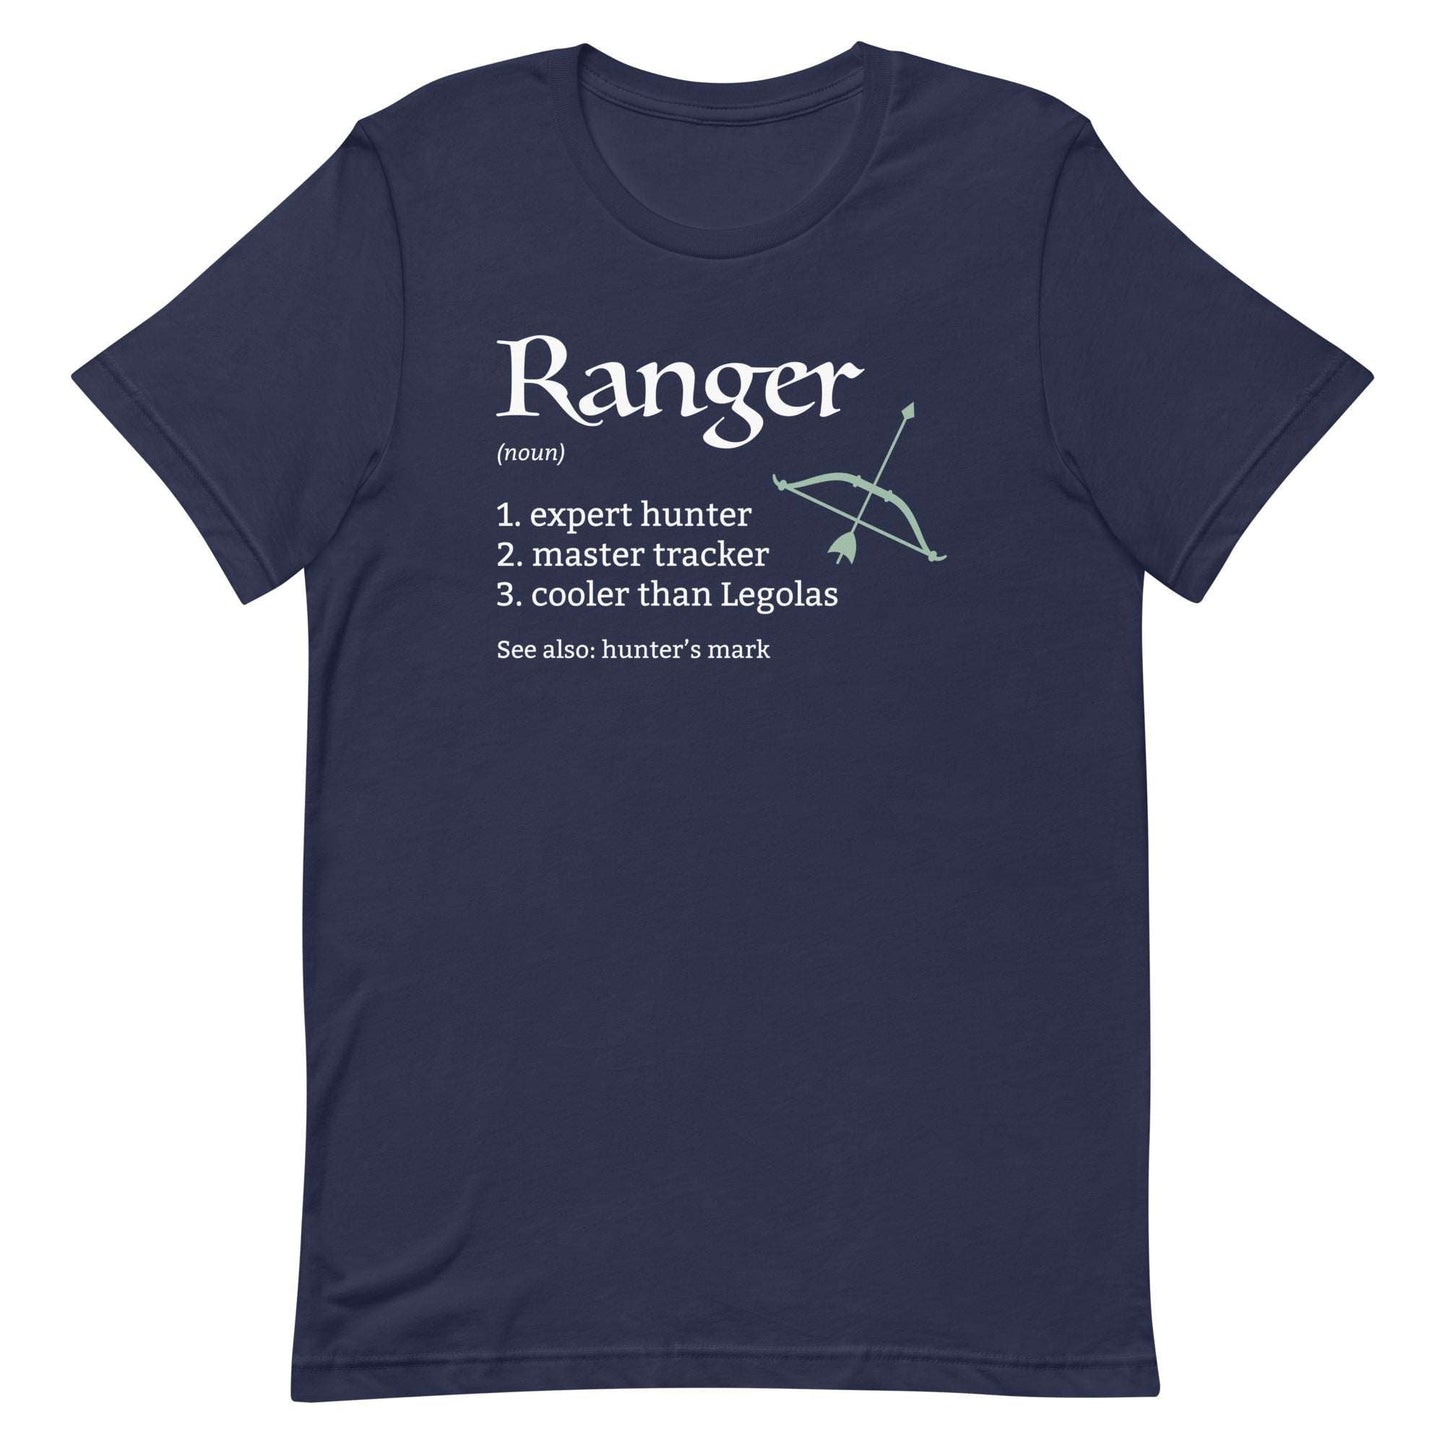 Ranger Class Definition T-Shirt – Funny DnD Definition Tee T-Shirt Navy / S